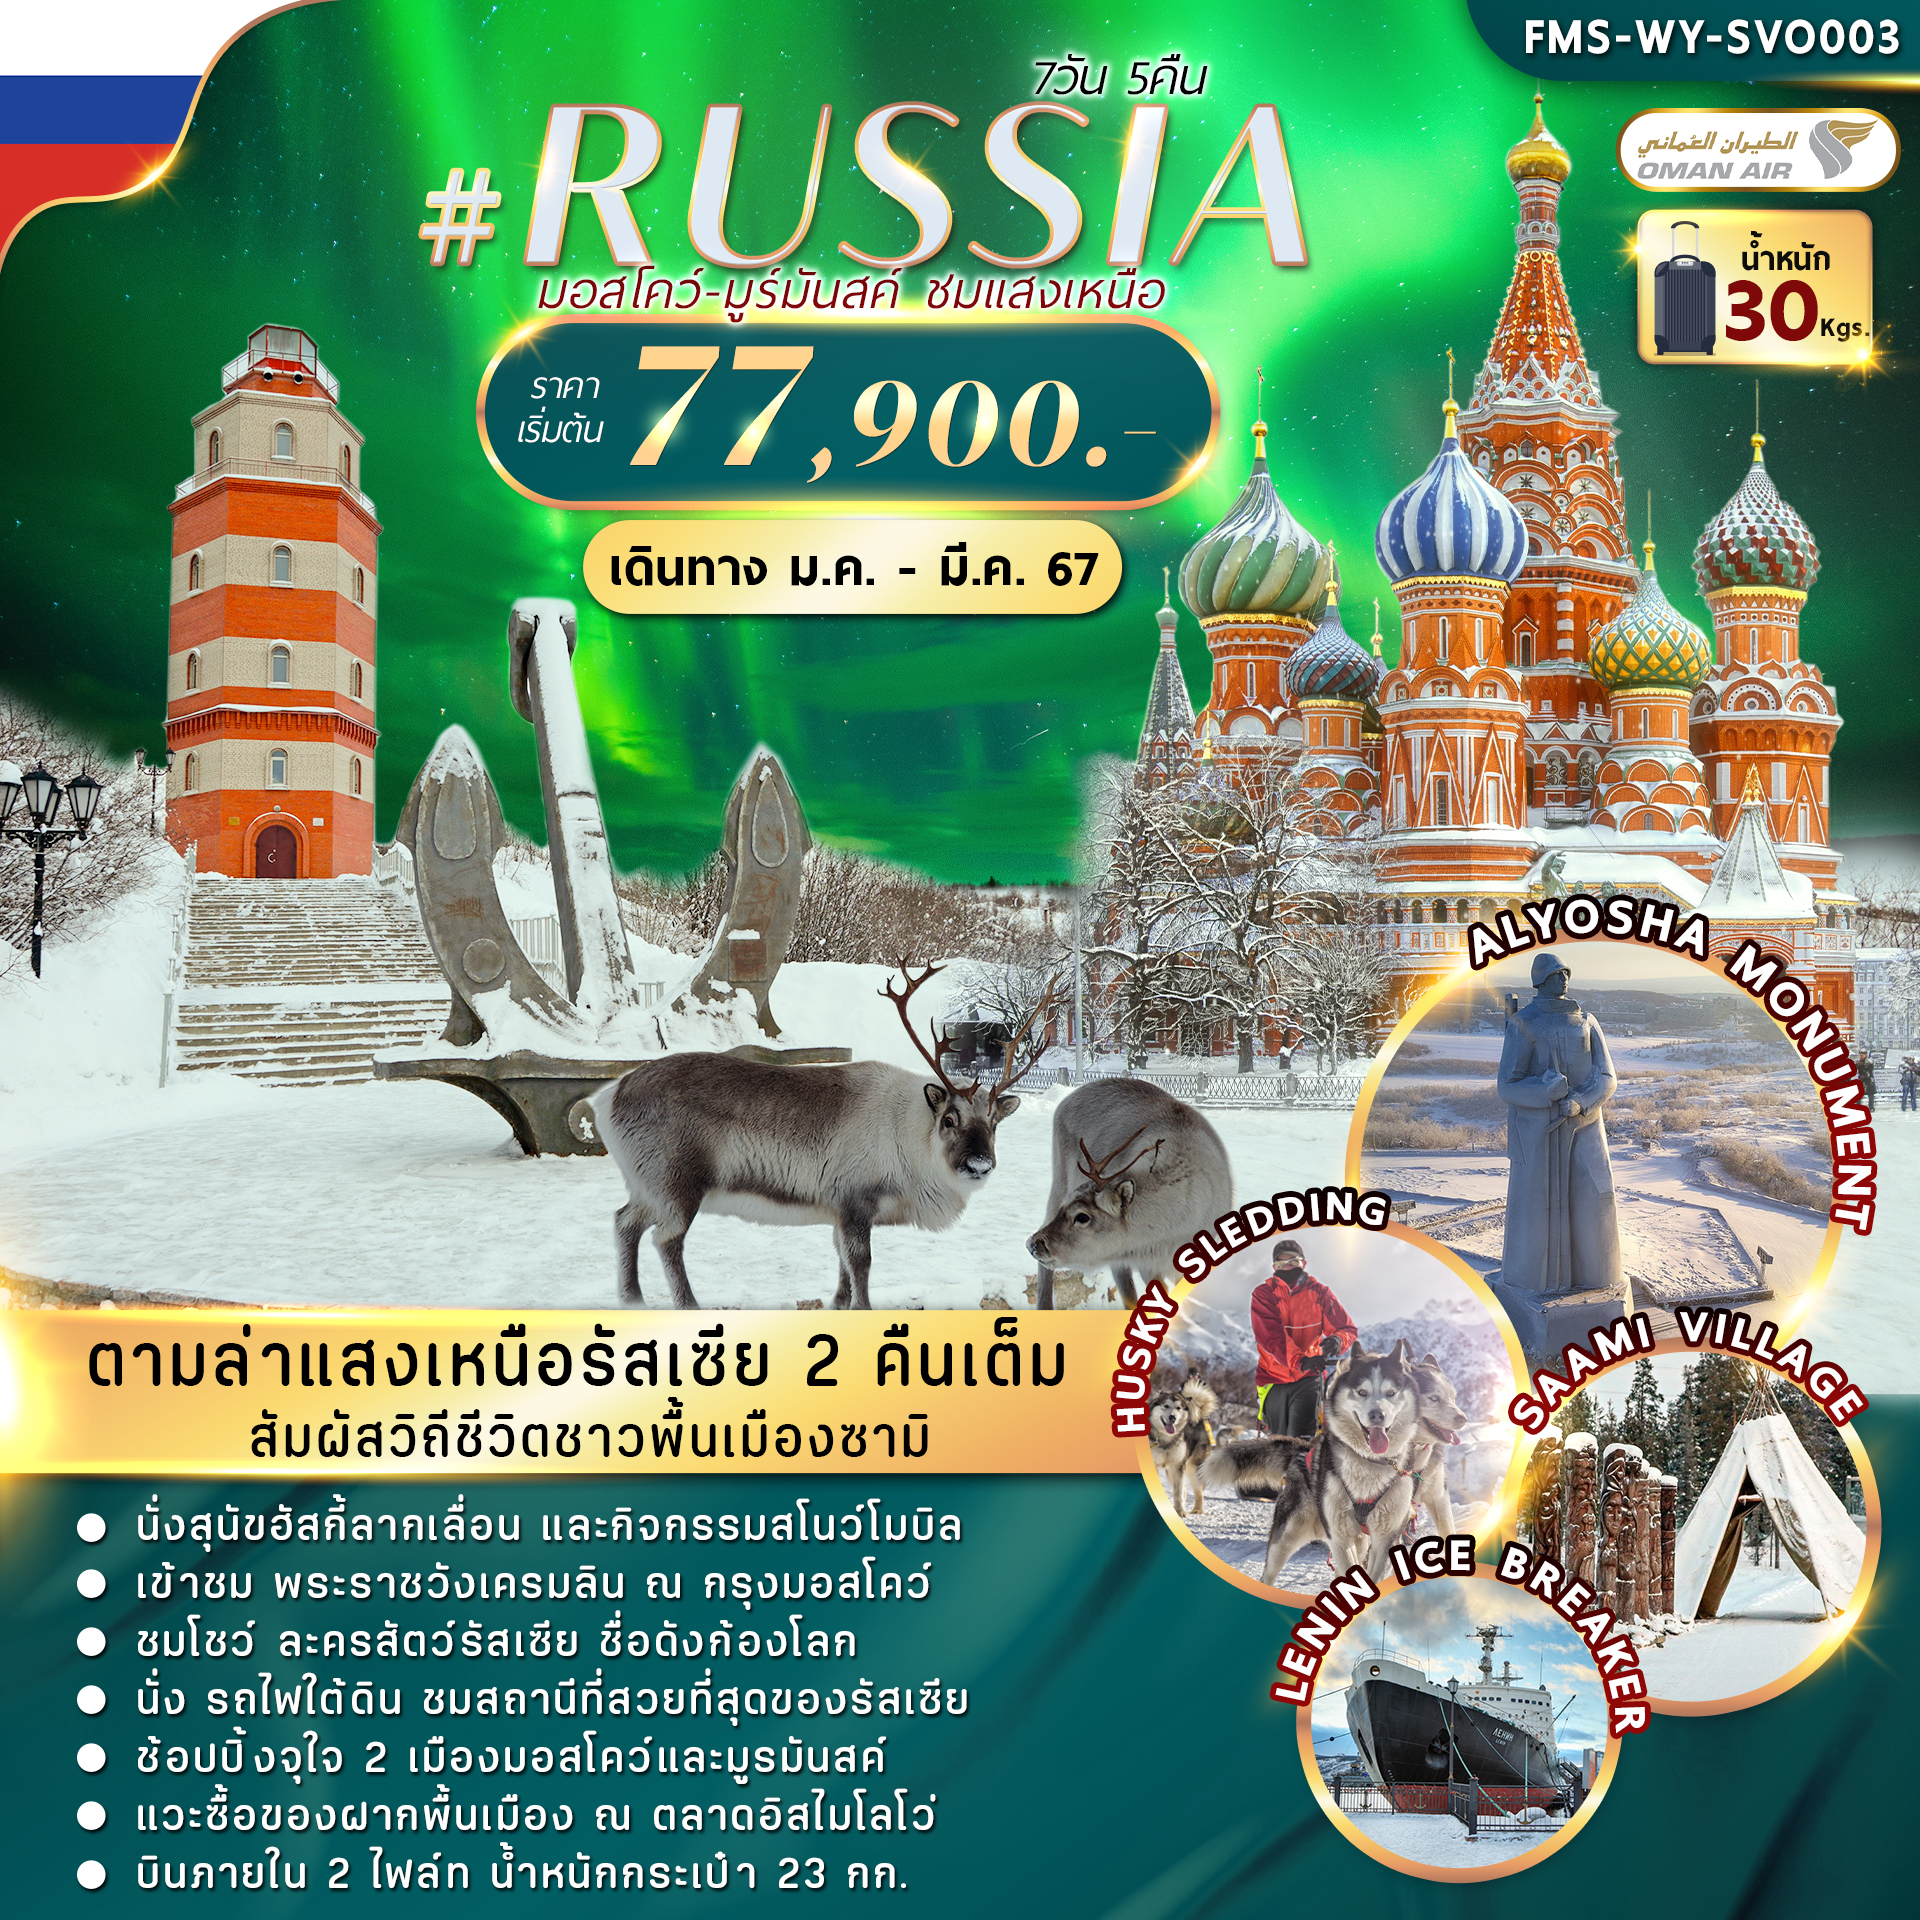 WY-SVO003 RUSSIA MOW-MURMANSK AURORA 7D5N (WY)